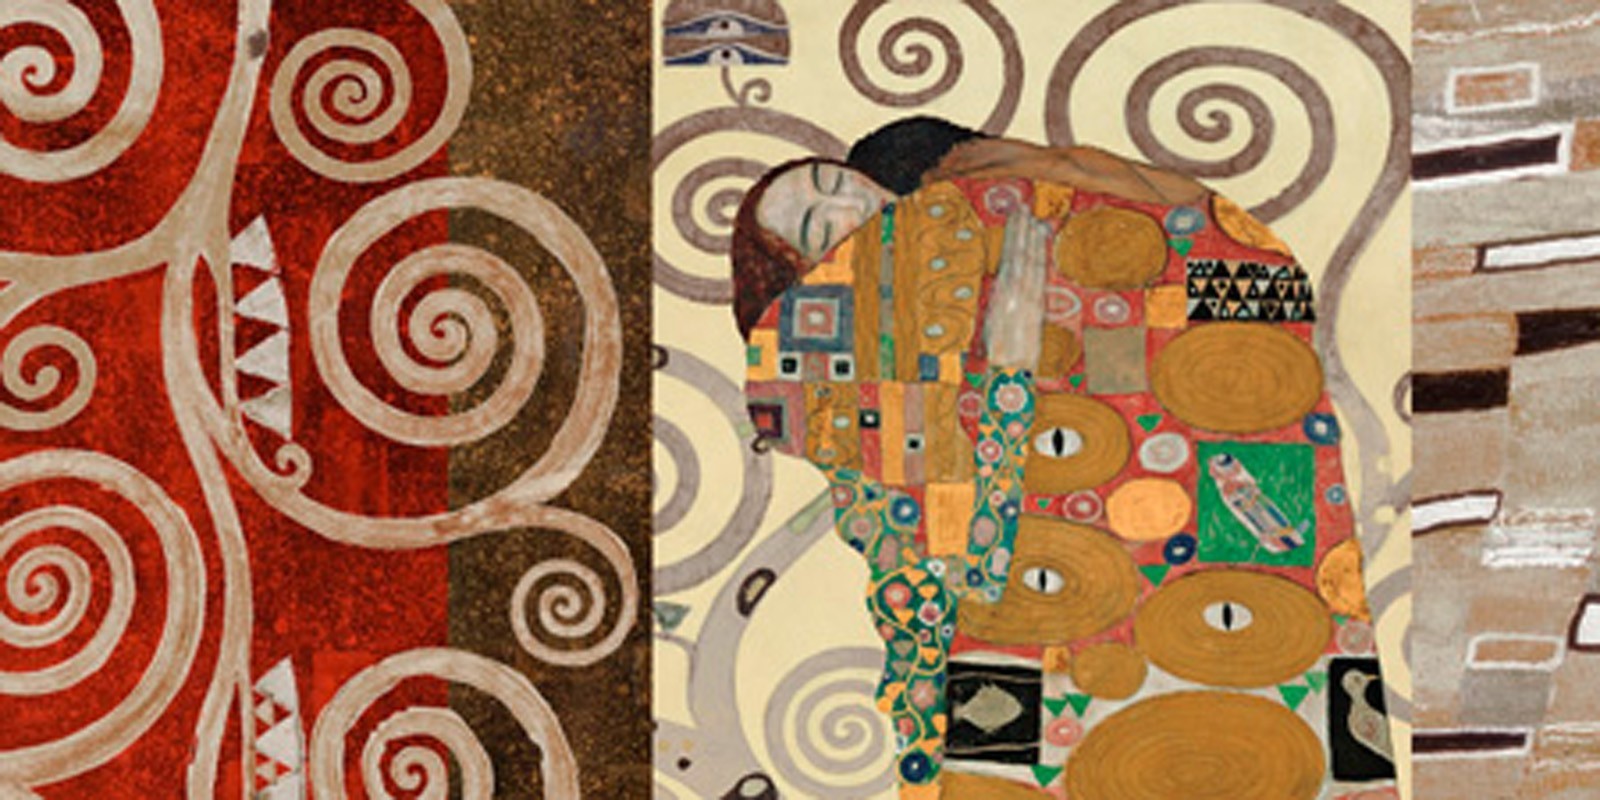 Gustav Klimt - Klimt Patterns - The Embrace (Pewter)